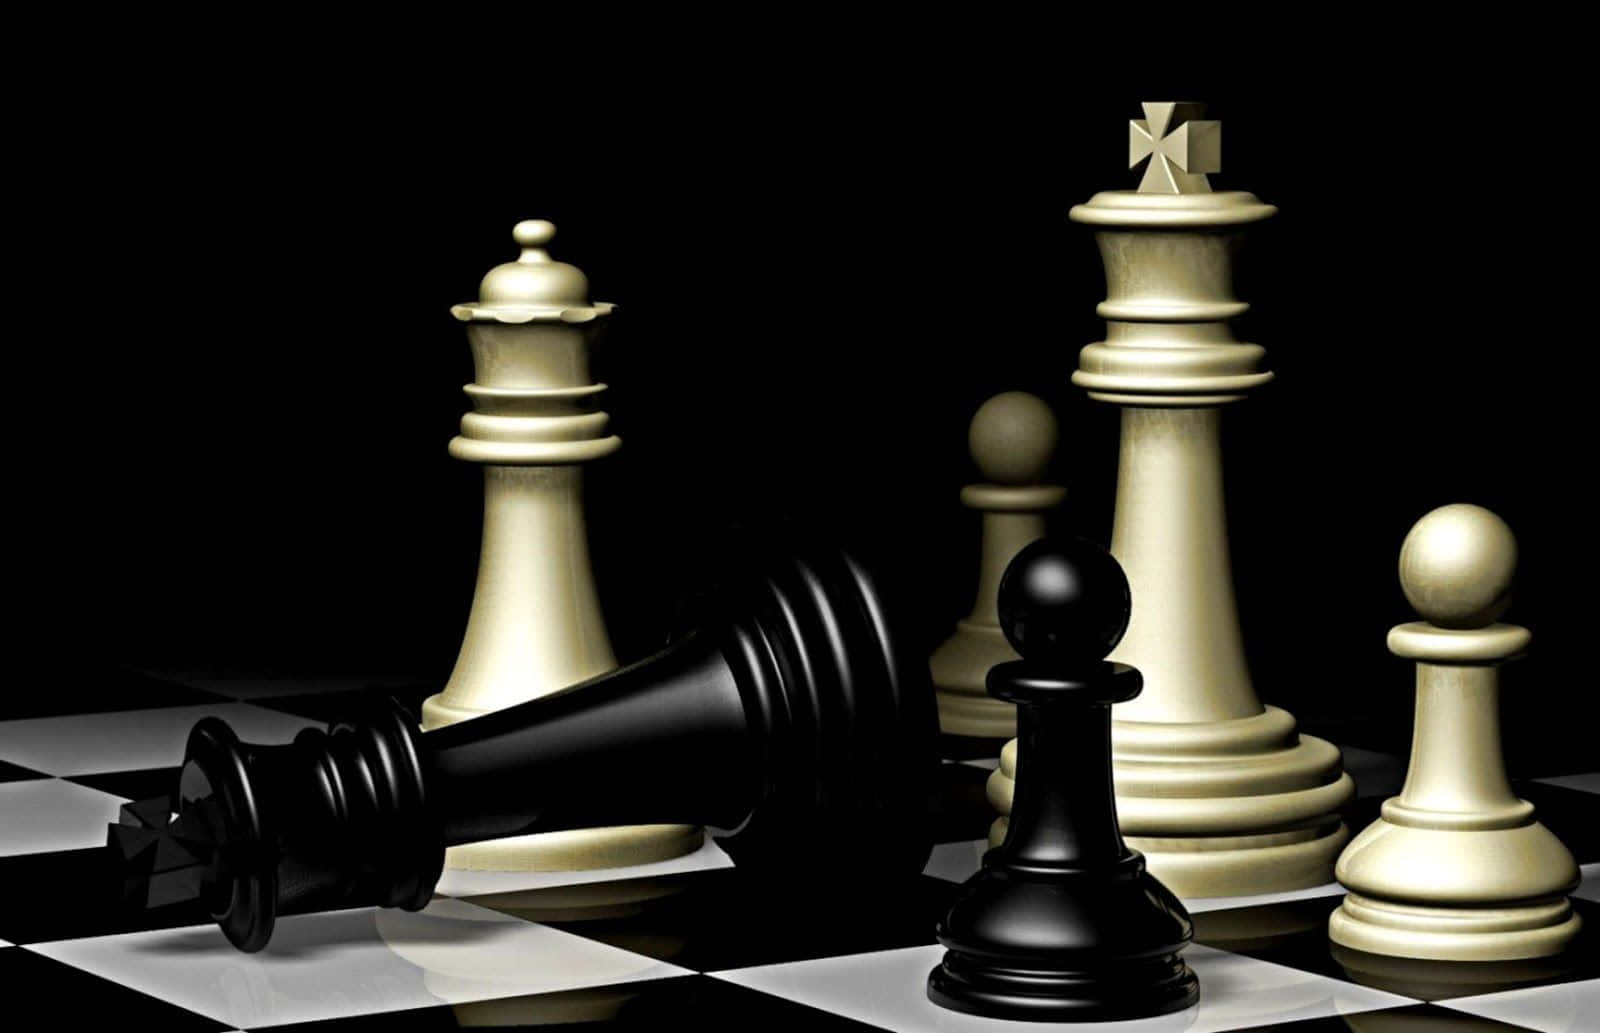 Schachfigurenauf Einem Schwarz-weiß Karierten Brett